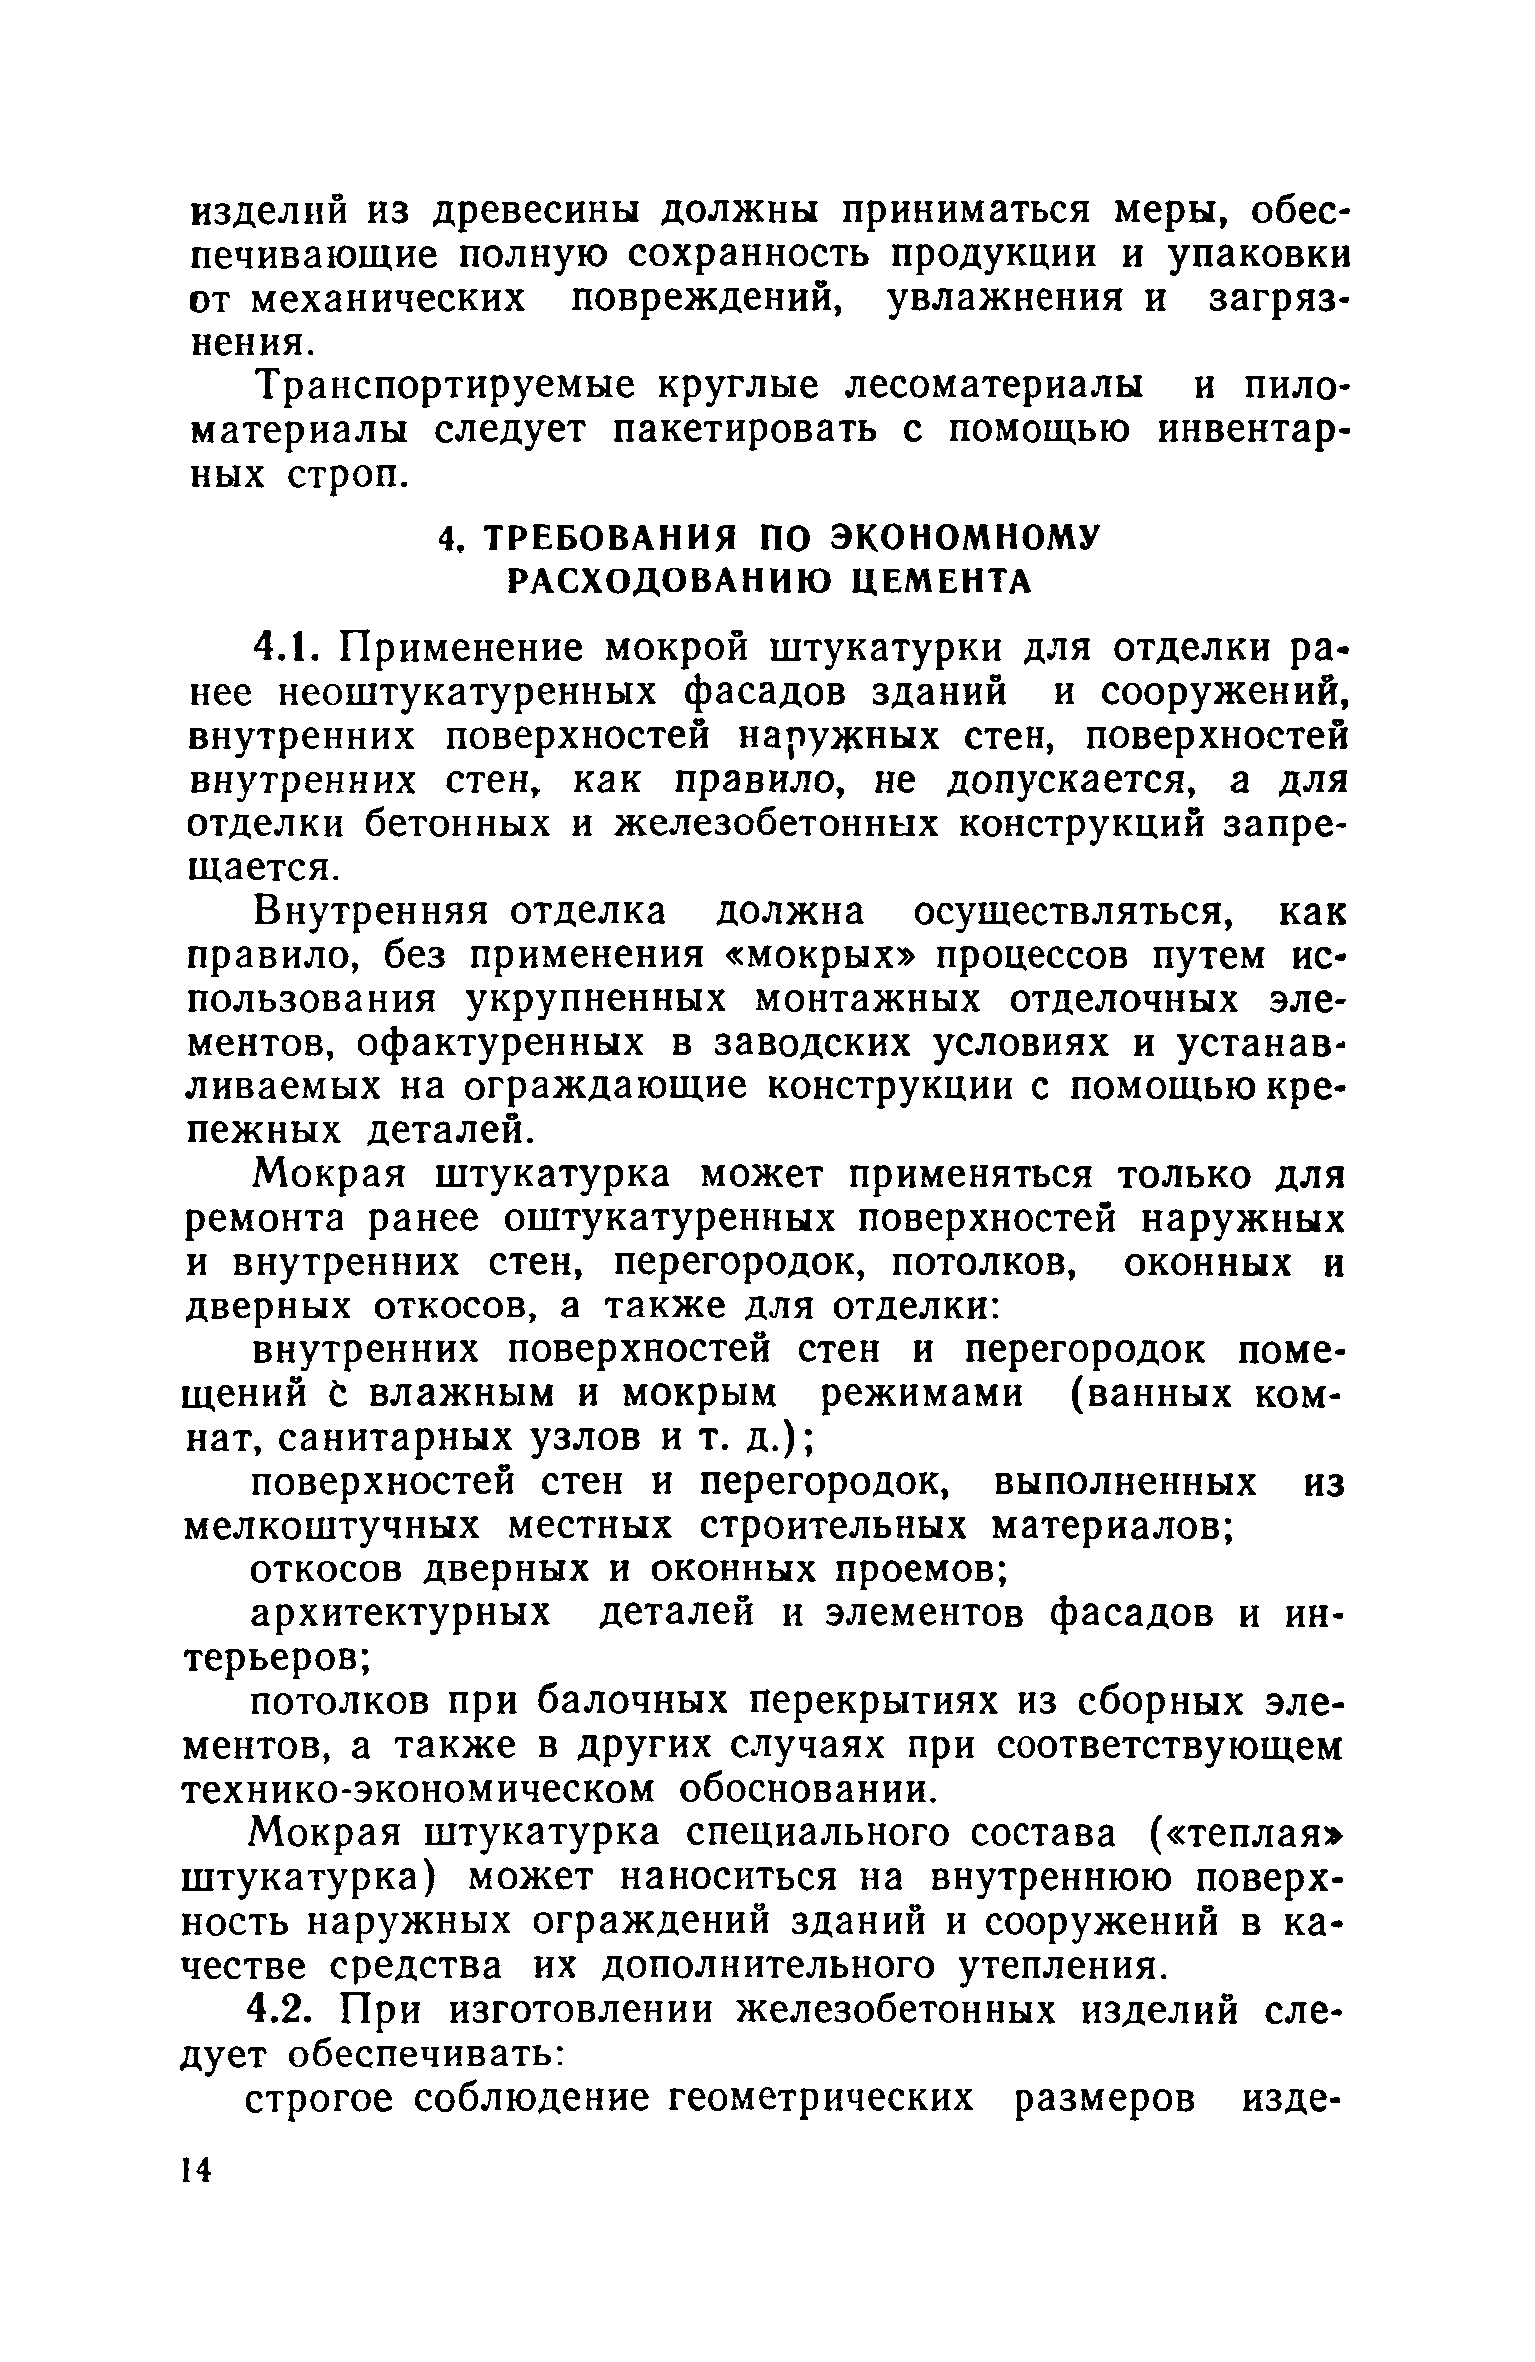 ВСН 40-84(р)/Госгражданстрой